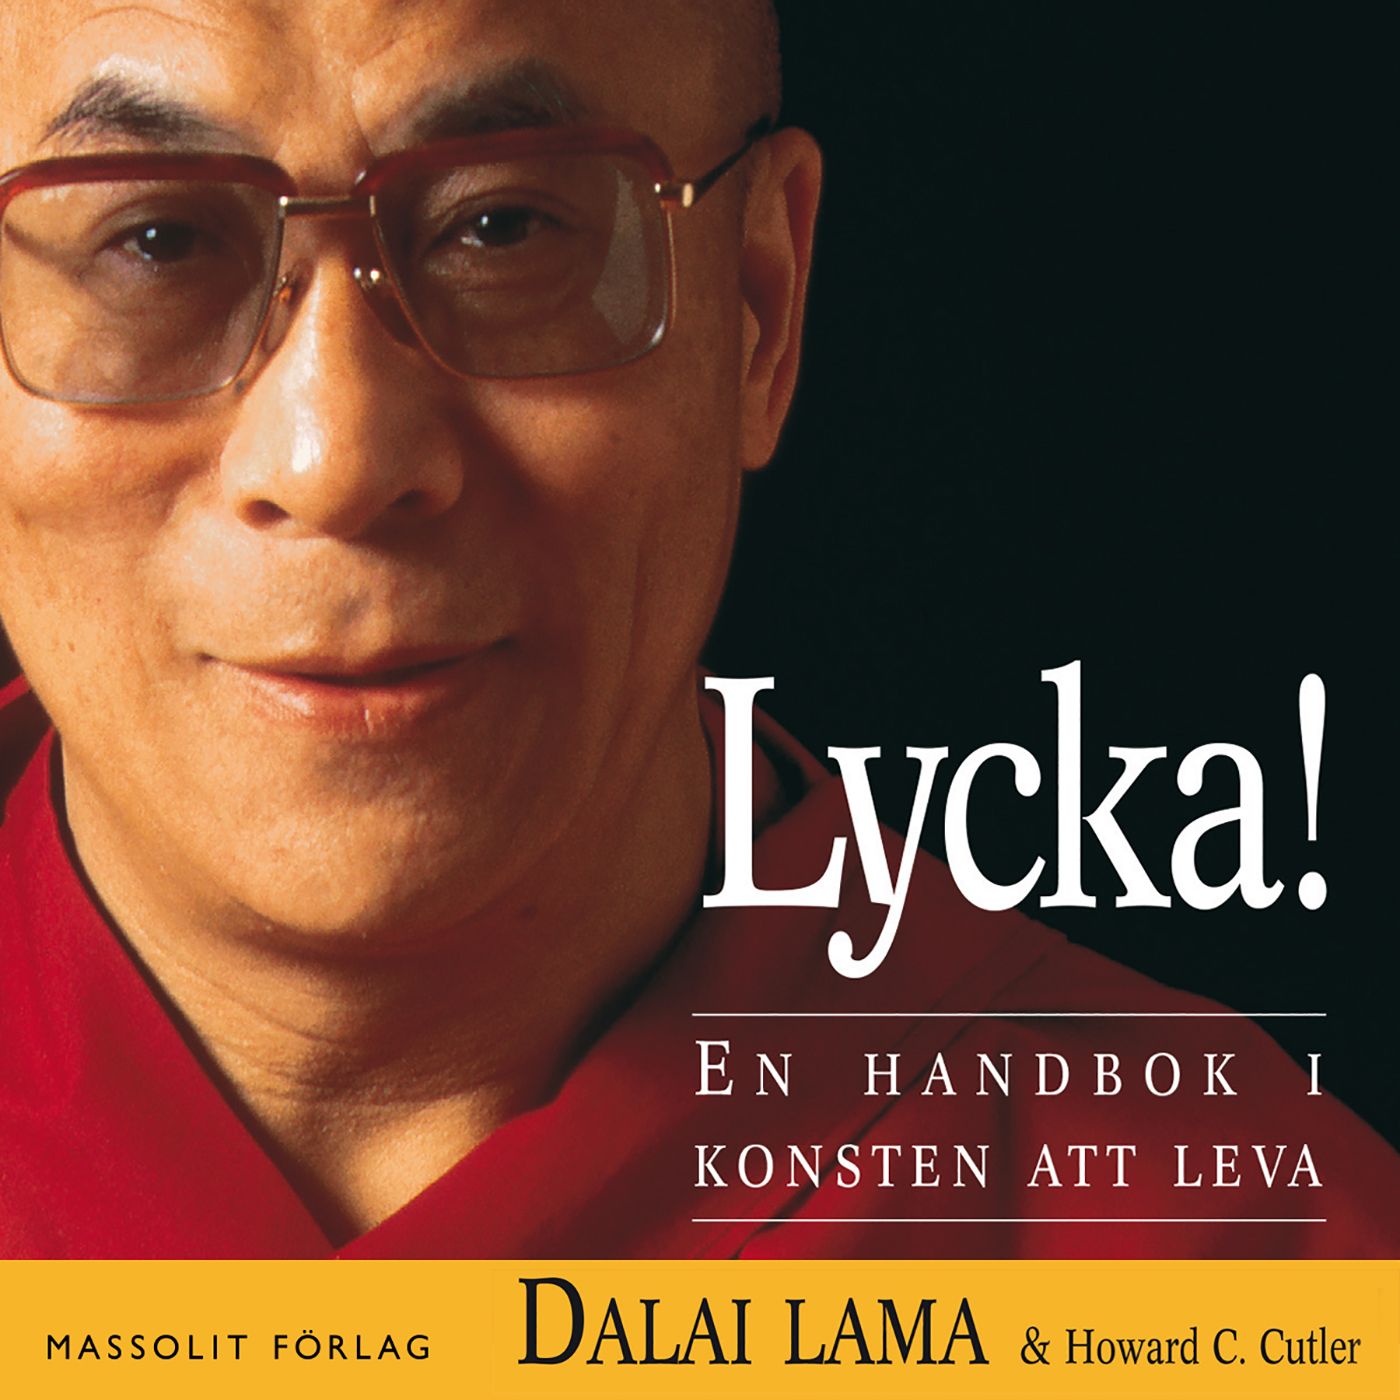 Lycka! En handbok i konsten att leva, ljudbok av Howard C Cutler, Dalai Lama